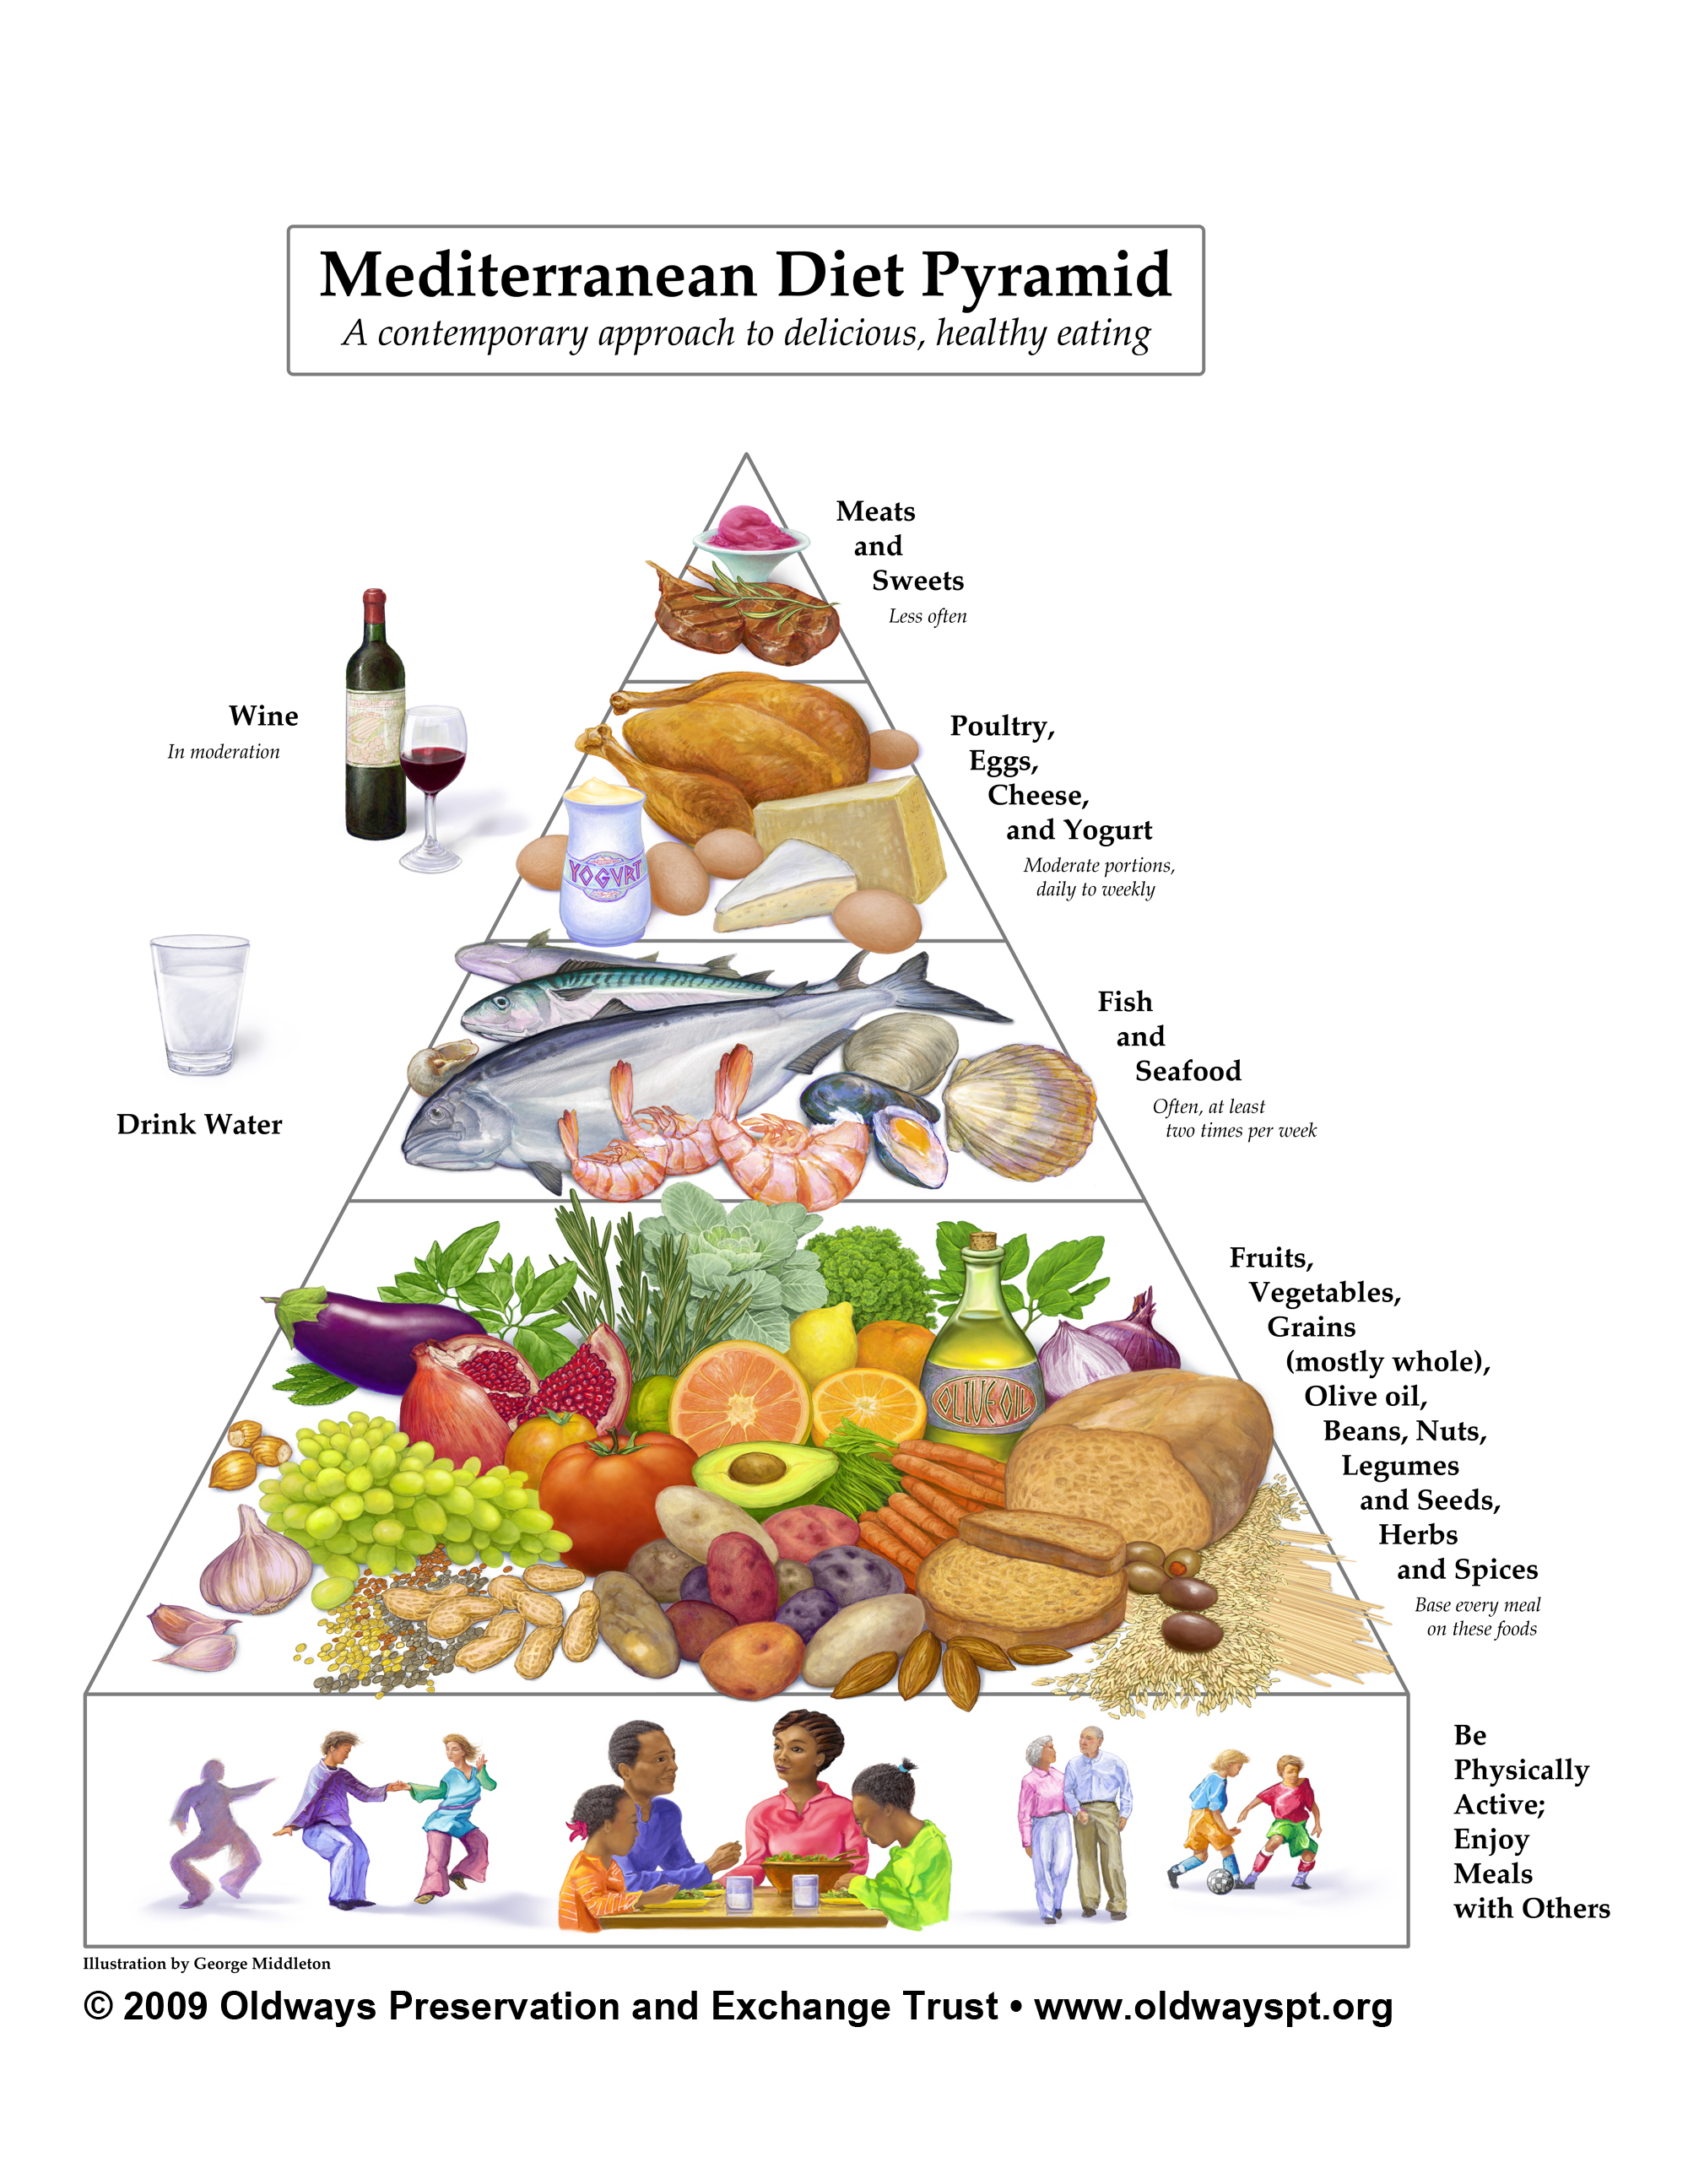 The Mediterranean diet pyramid